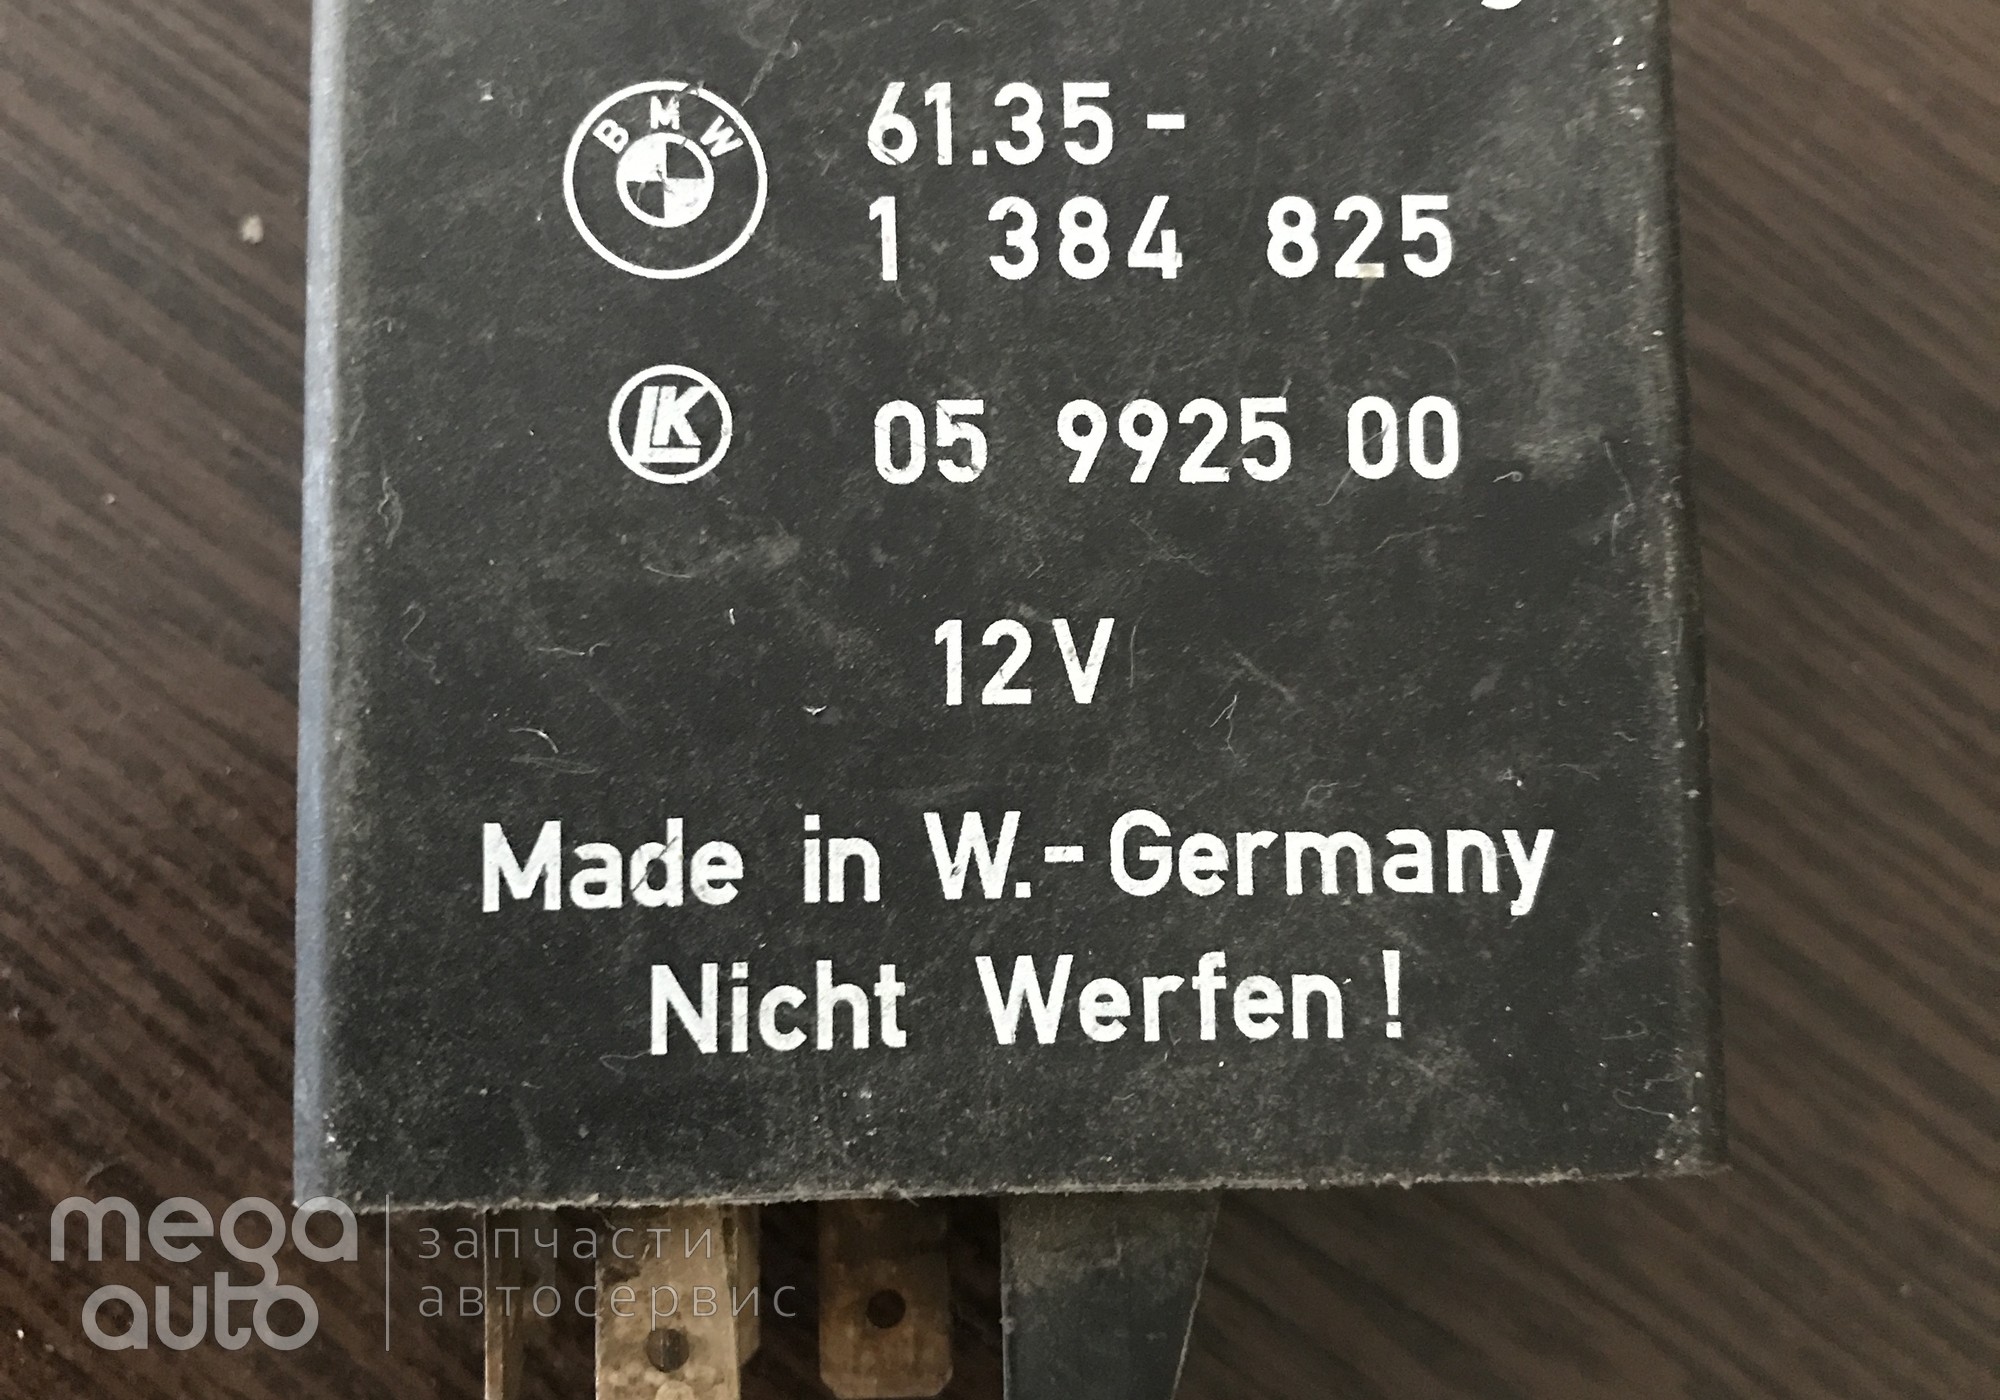 61351384825 Реле обогрева заднего стекла бмв 5 е34 для BMW 5 E34 (с 1987 по 1997)